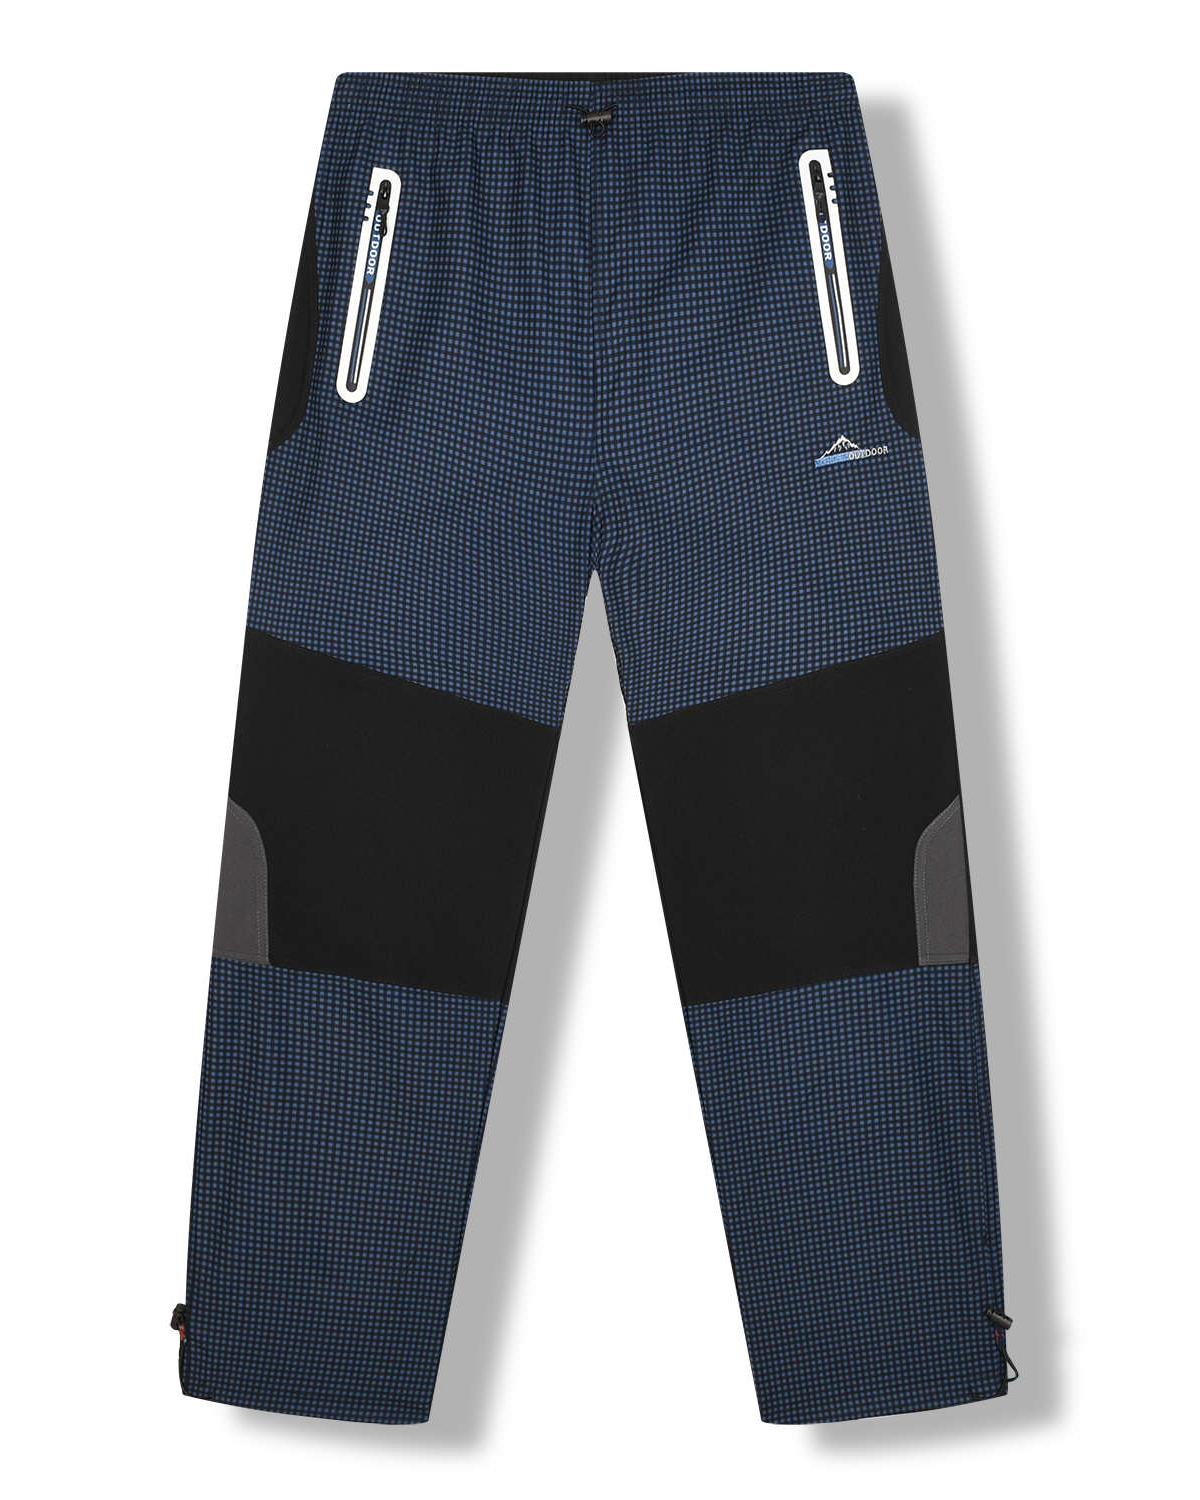 Pánské outdoorové kalhoty - KUGO G8551, modrá Barva: Modrá, Velikost: L